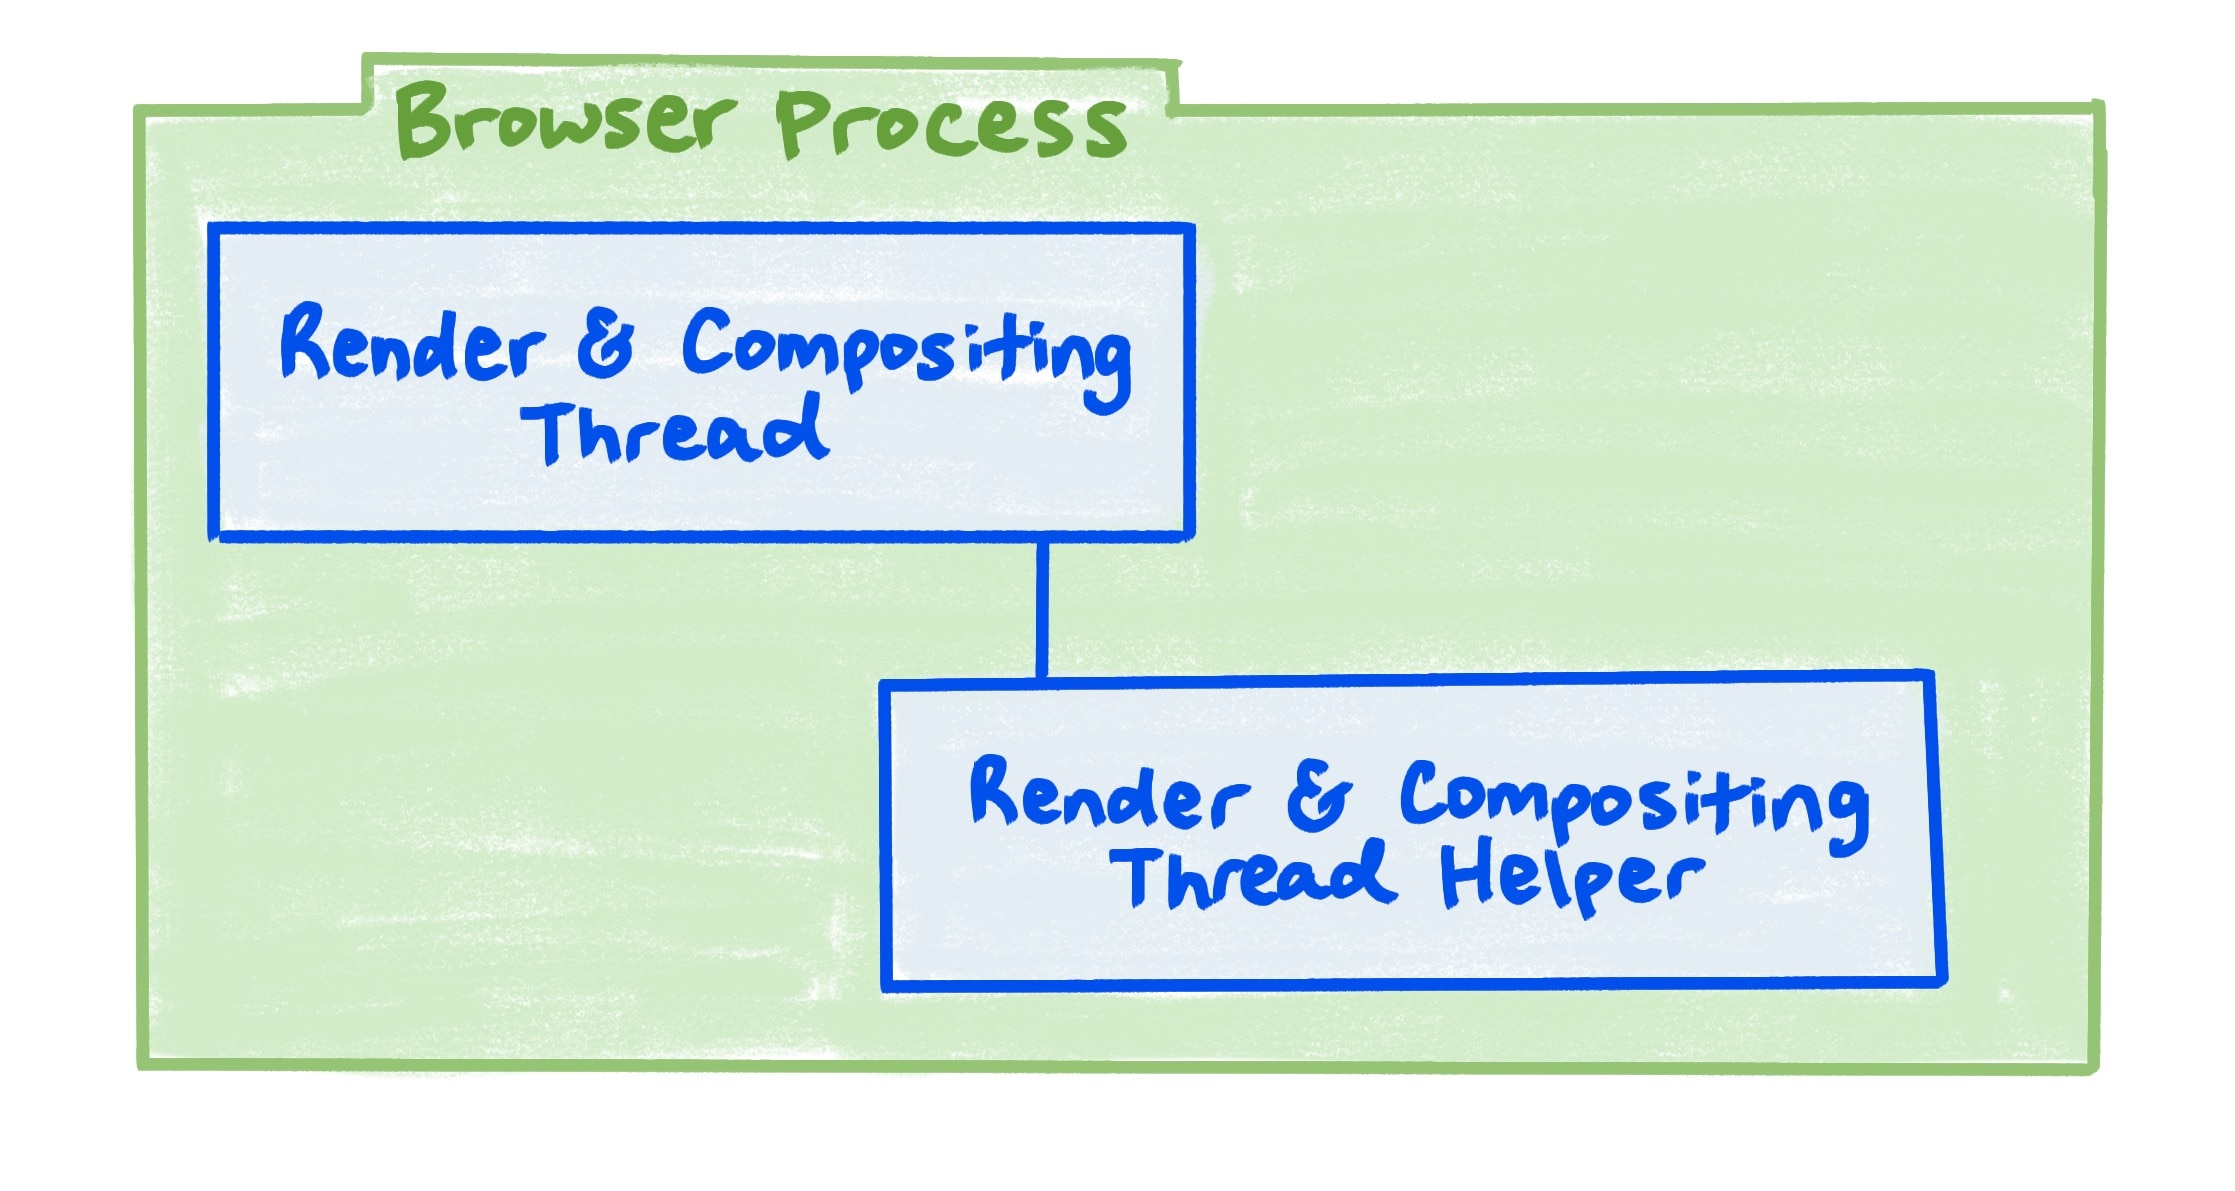 Ein Browser-Prozessdiagramm, das die Beziehung zwischen dem Rendering- und dem zusammengesetzten Thread und dem Assistenten zum Rendern und Zusammensetzen des Threads zeigt.